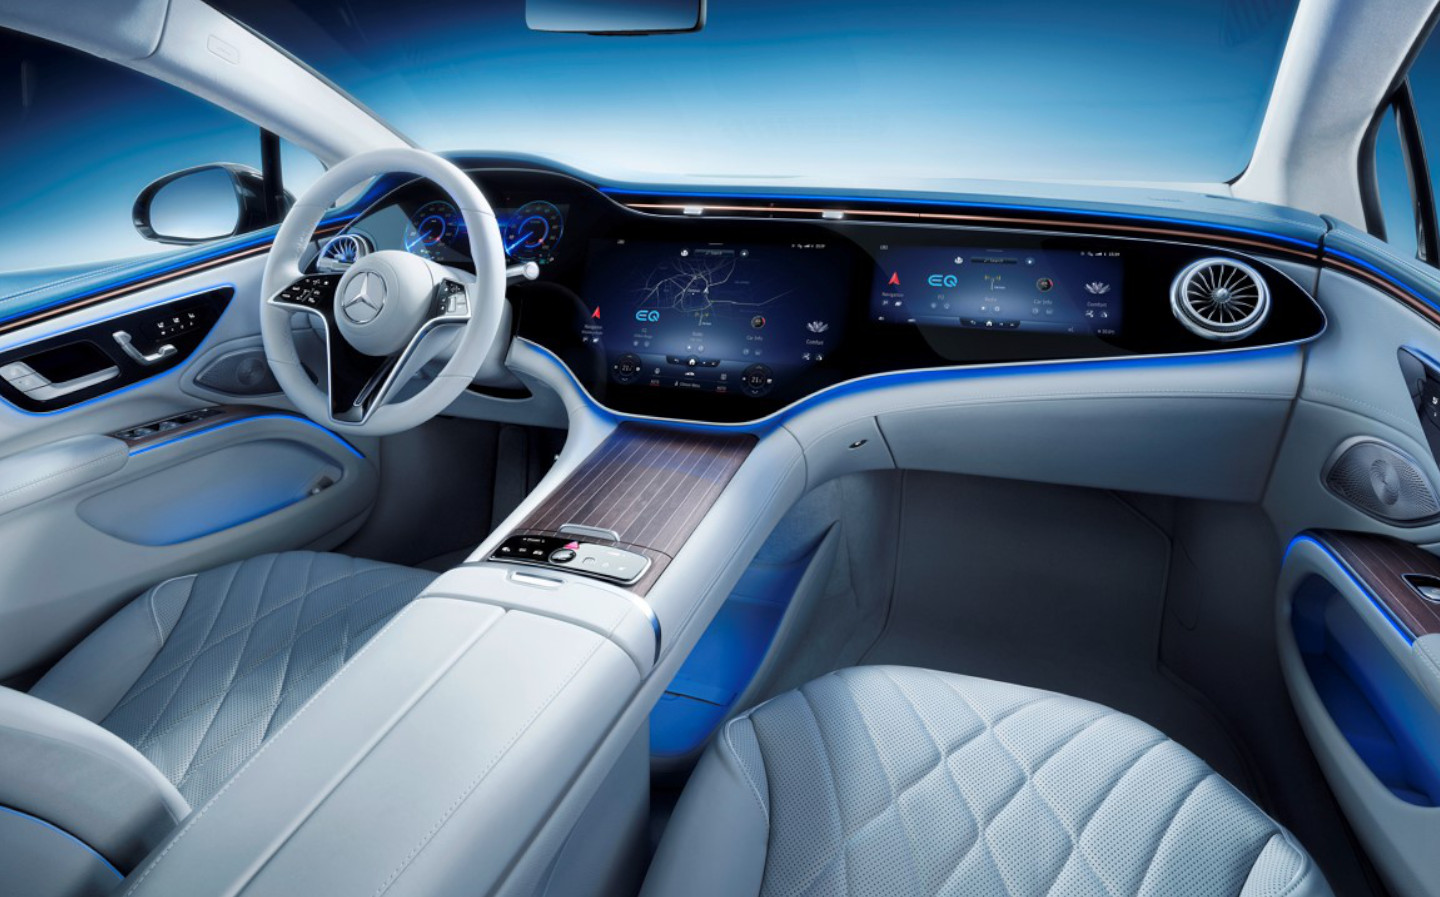 Mercedes reveals interior of new EQS electric flagship